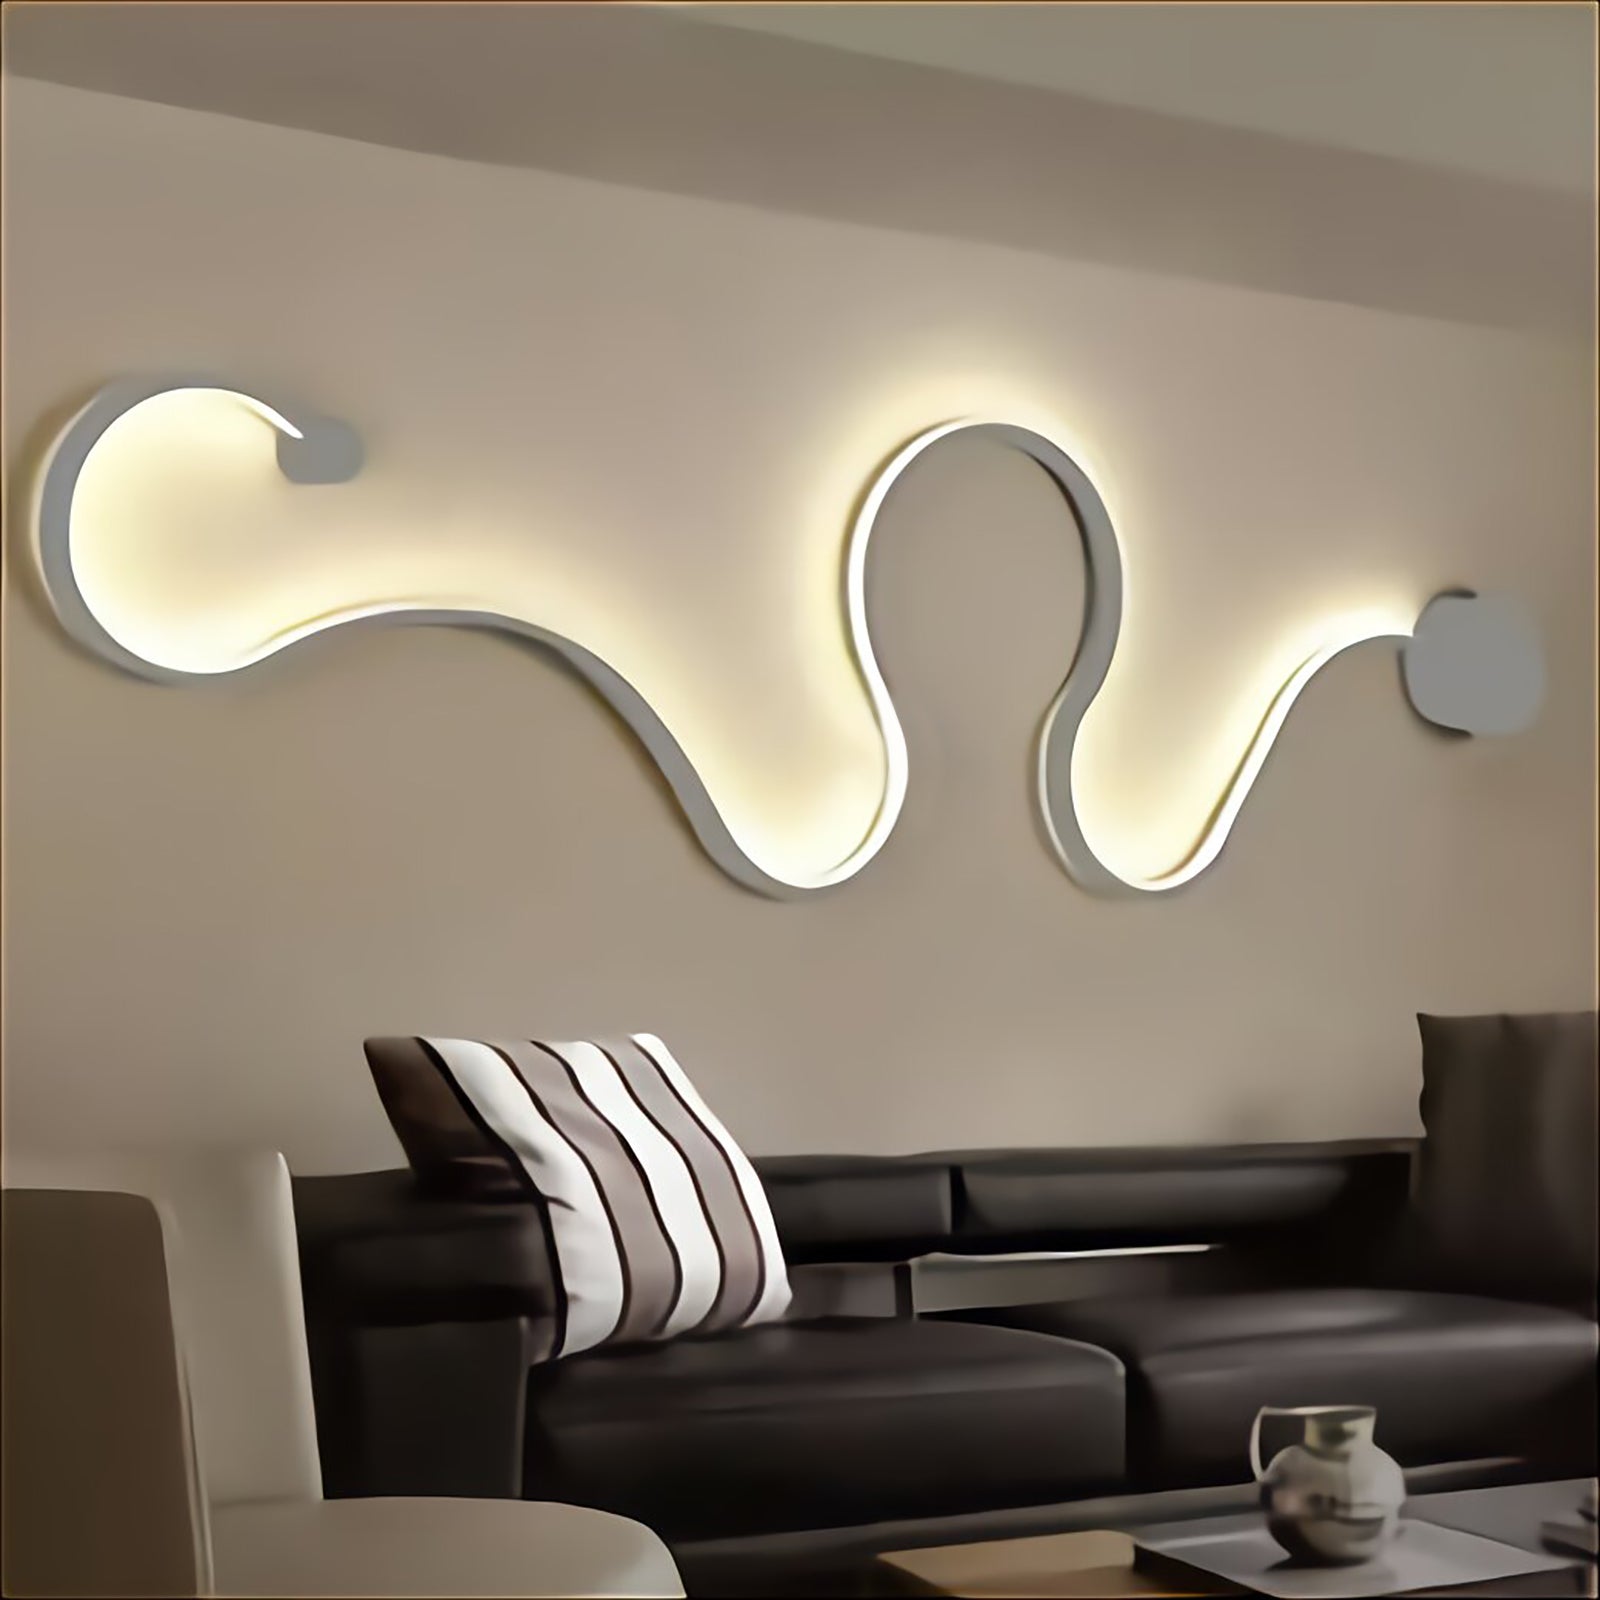 Applique murale moderne blanche LED 10W lumière stylisée table de chevet  salon 230V LIGHT 3000K